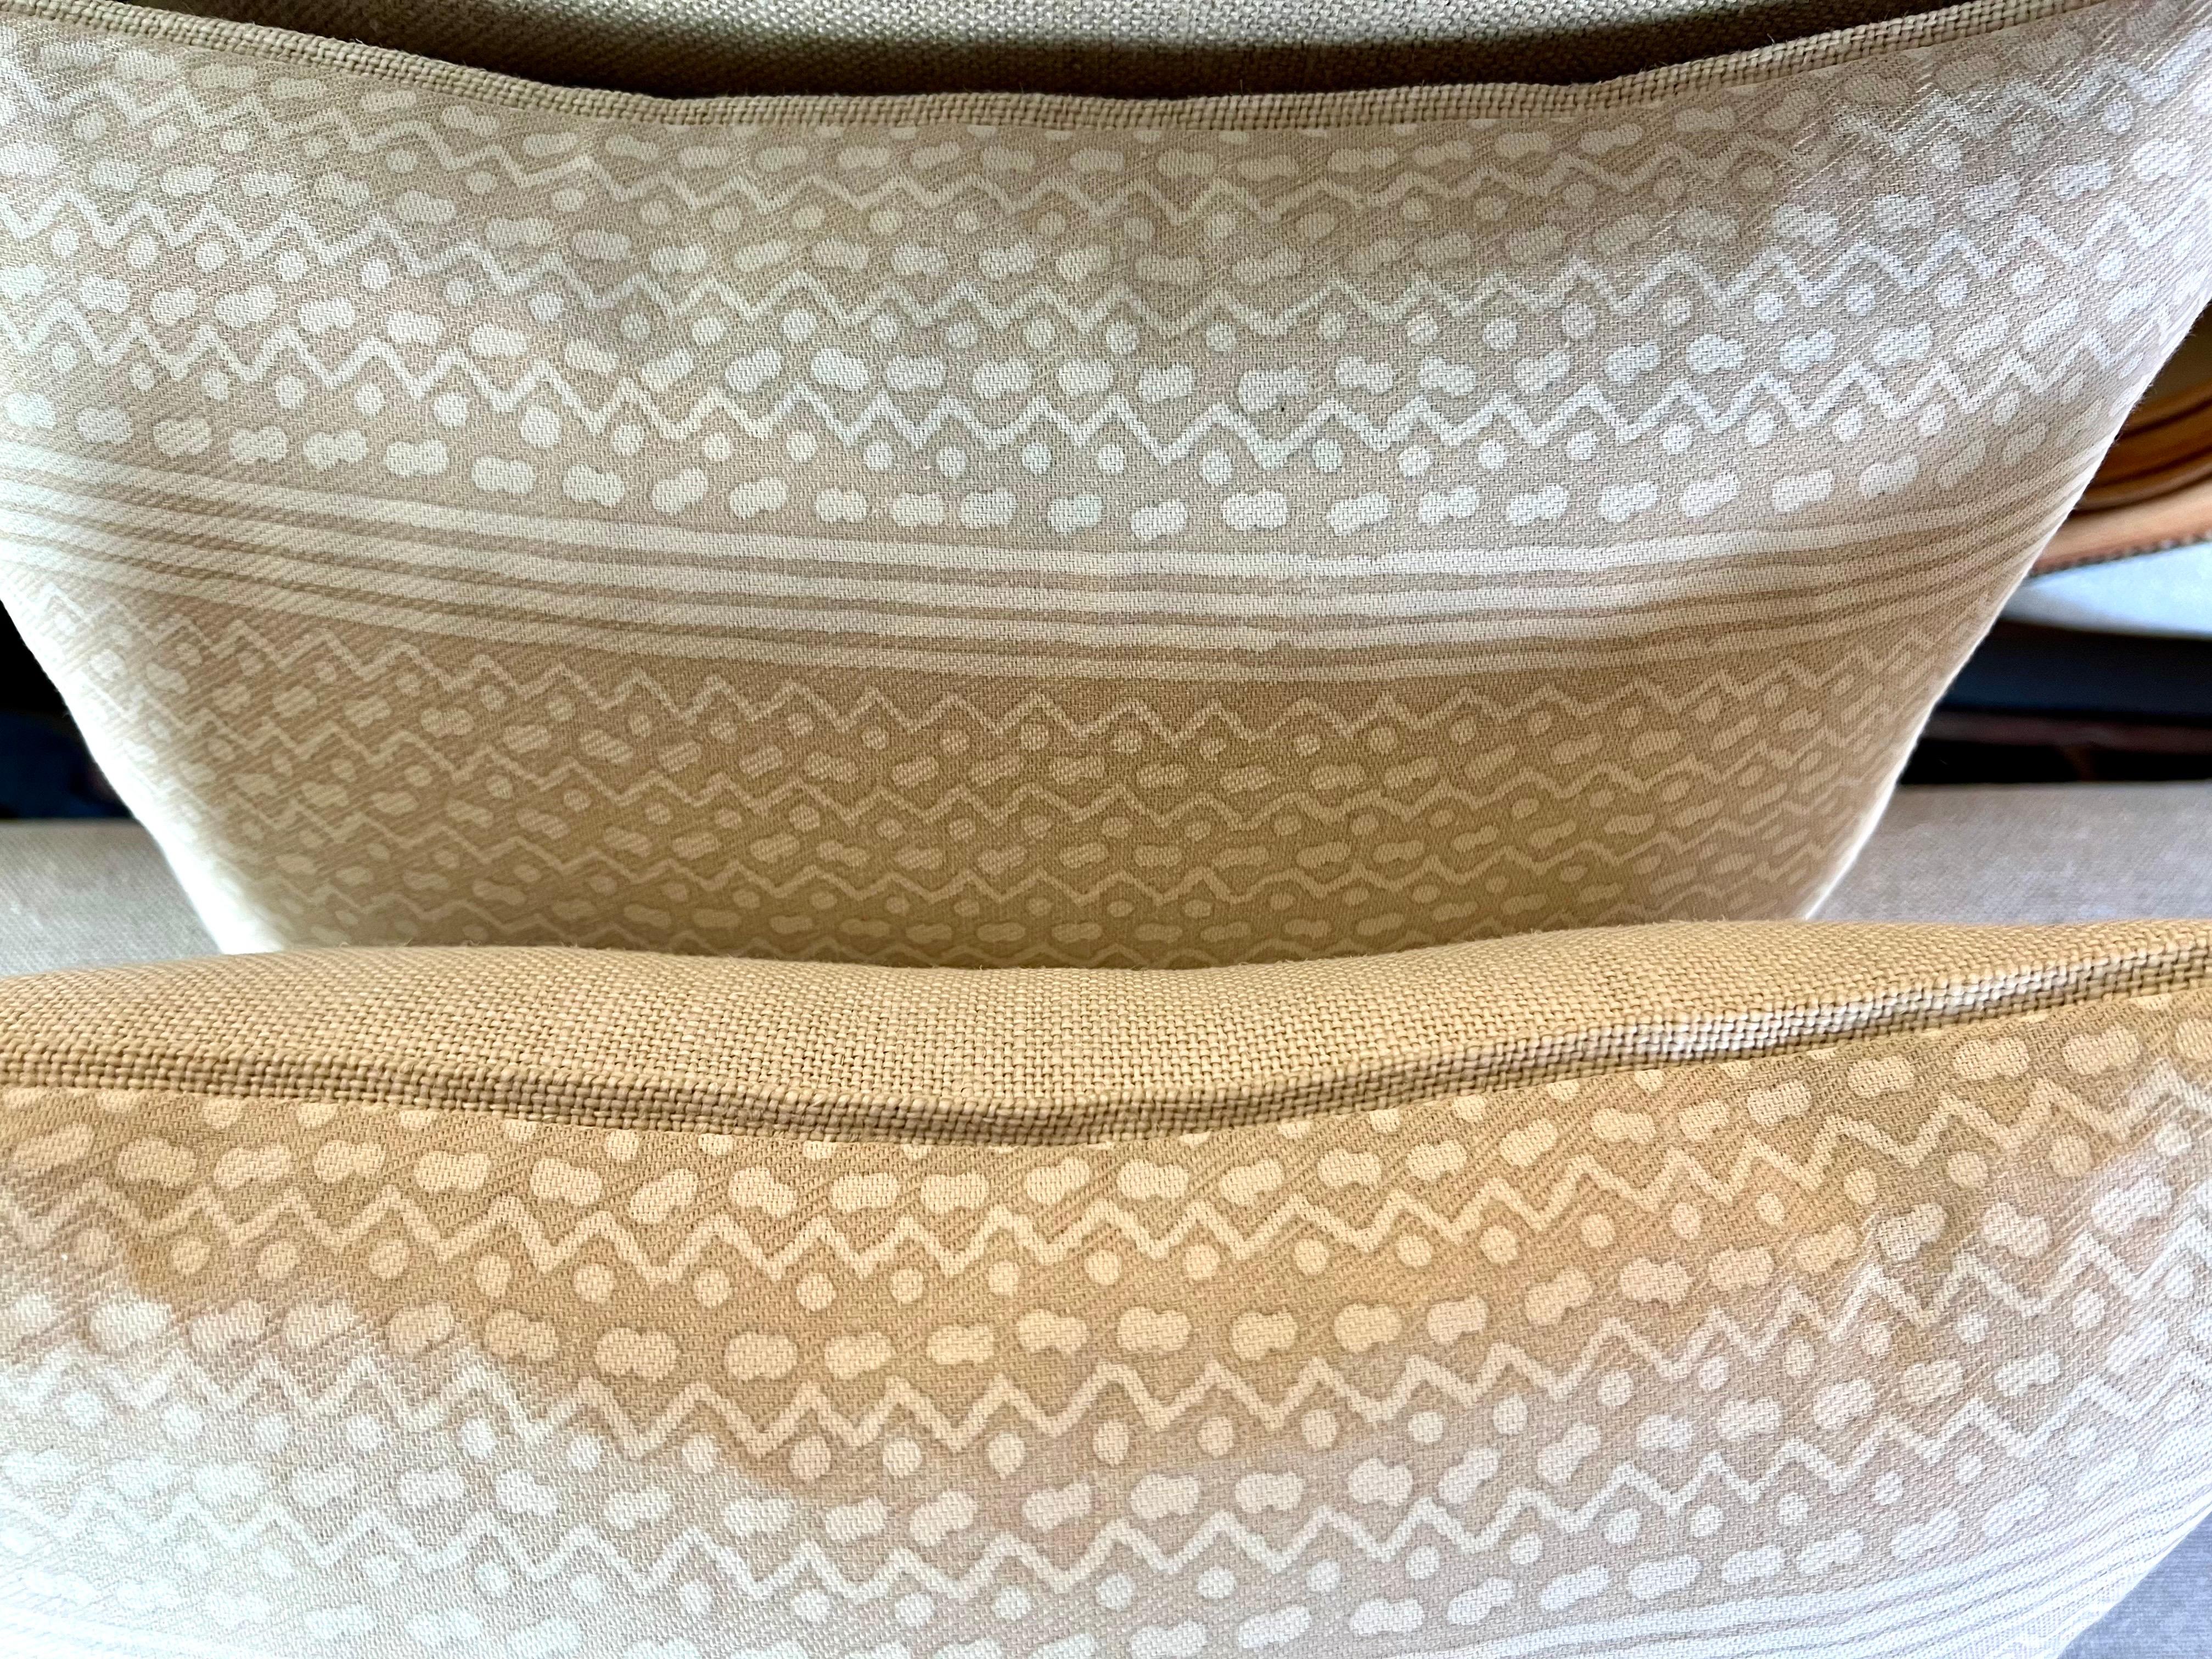 Une paire de luxueux coussins Tapa Stripe Patterned Fortuny, exsudant un air d'élégance intemporelle et de goût raffiné.  Ces oreillers présentent un magnifique design imprimé, caractérisé par le motif distinctif Tapa Stripe, synonyme de la